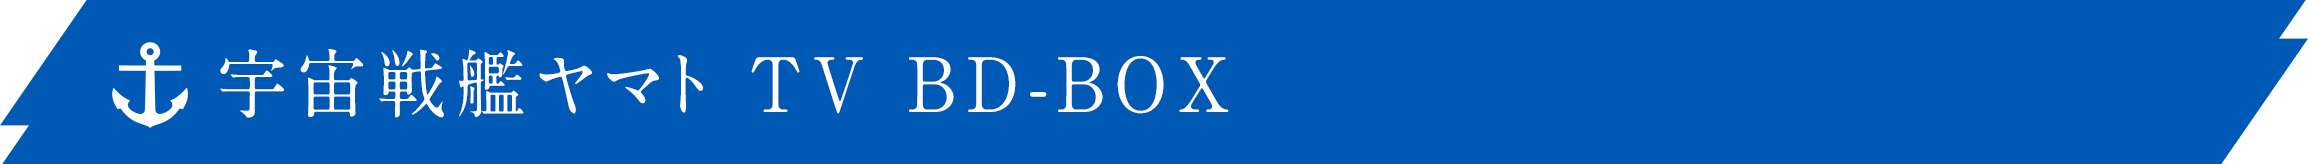 宇宙戦艦ヤマト TV BD-BOX